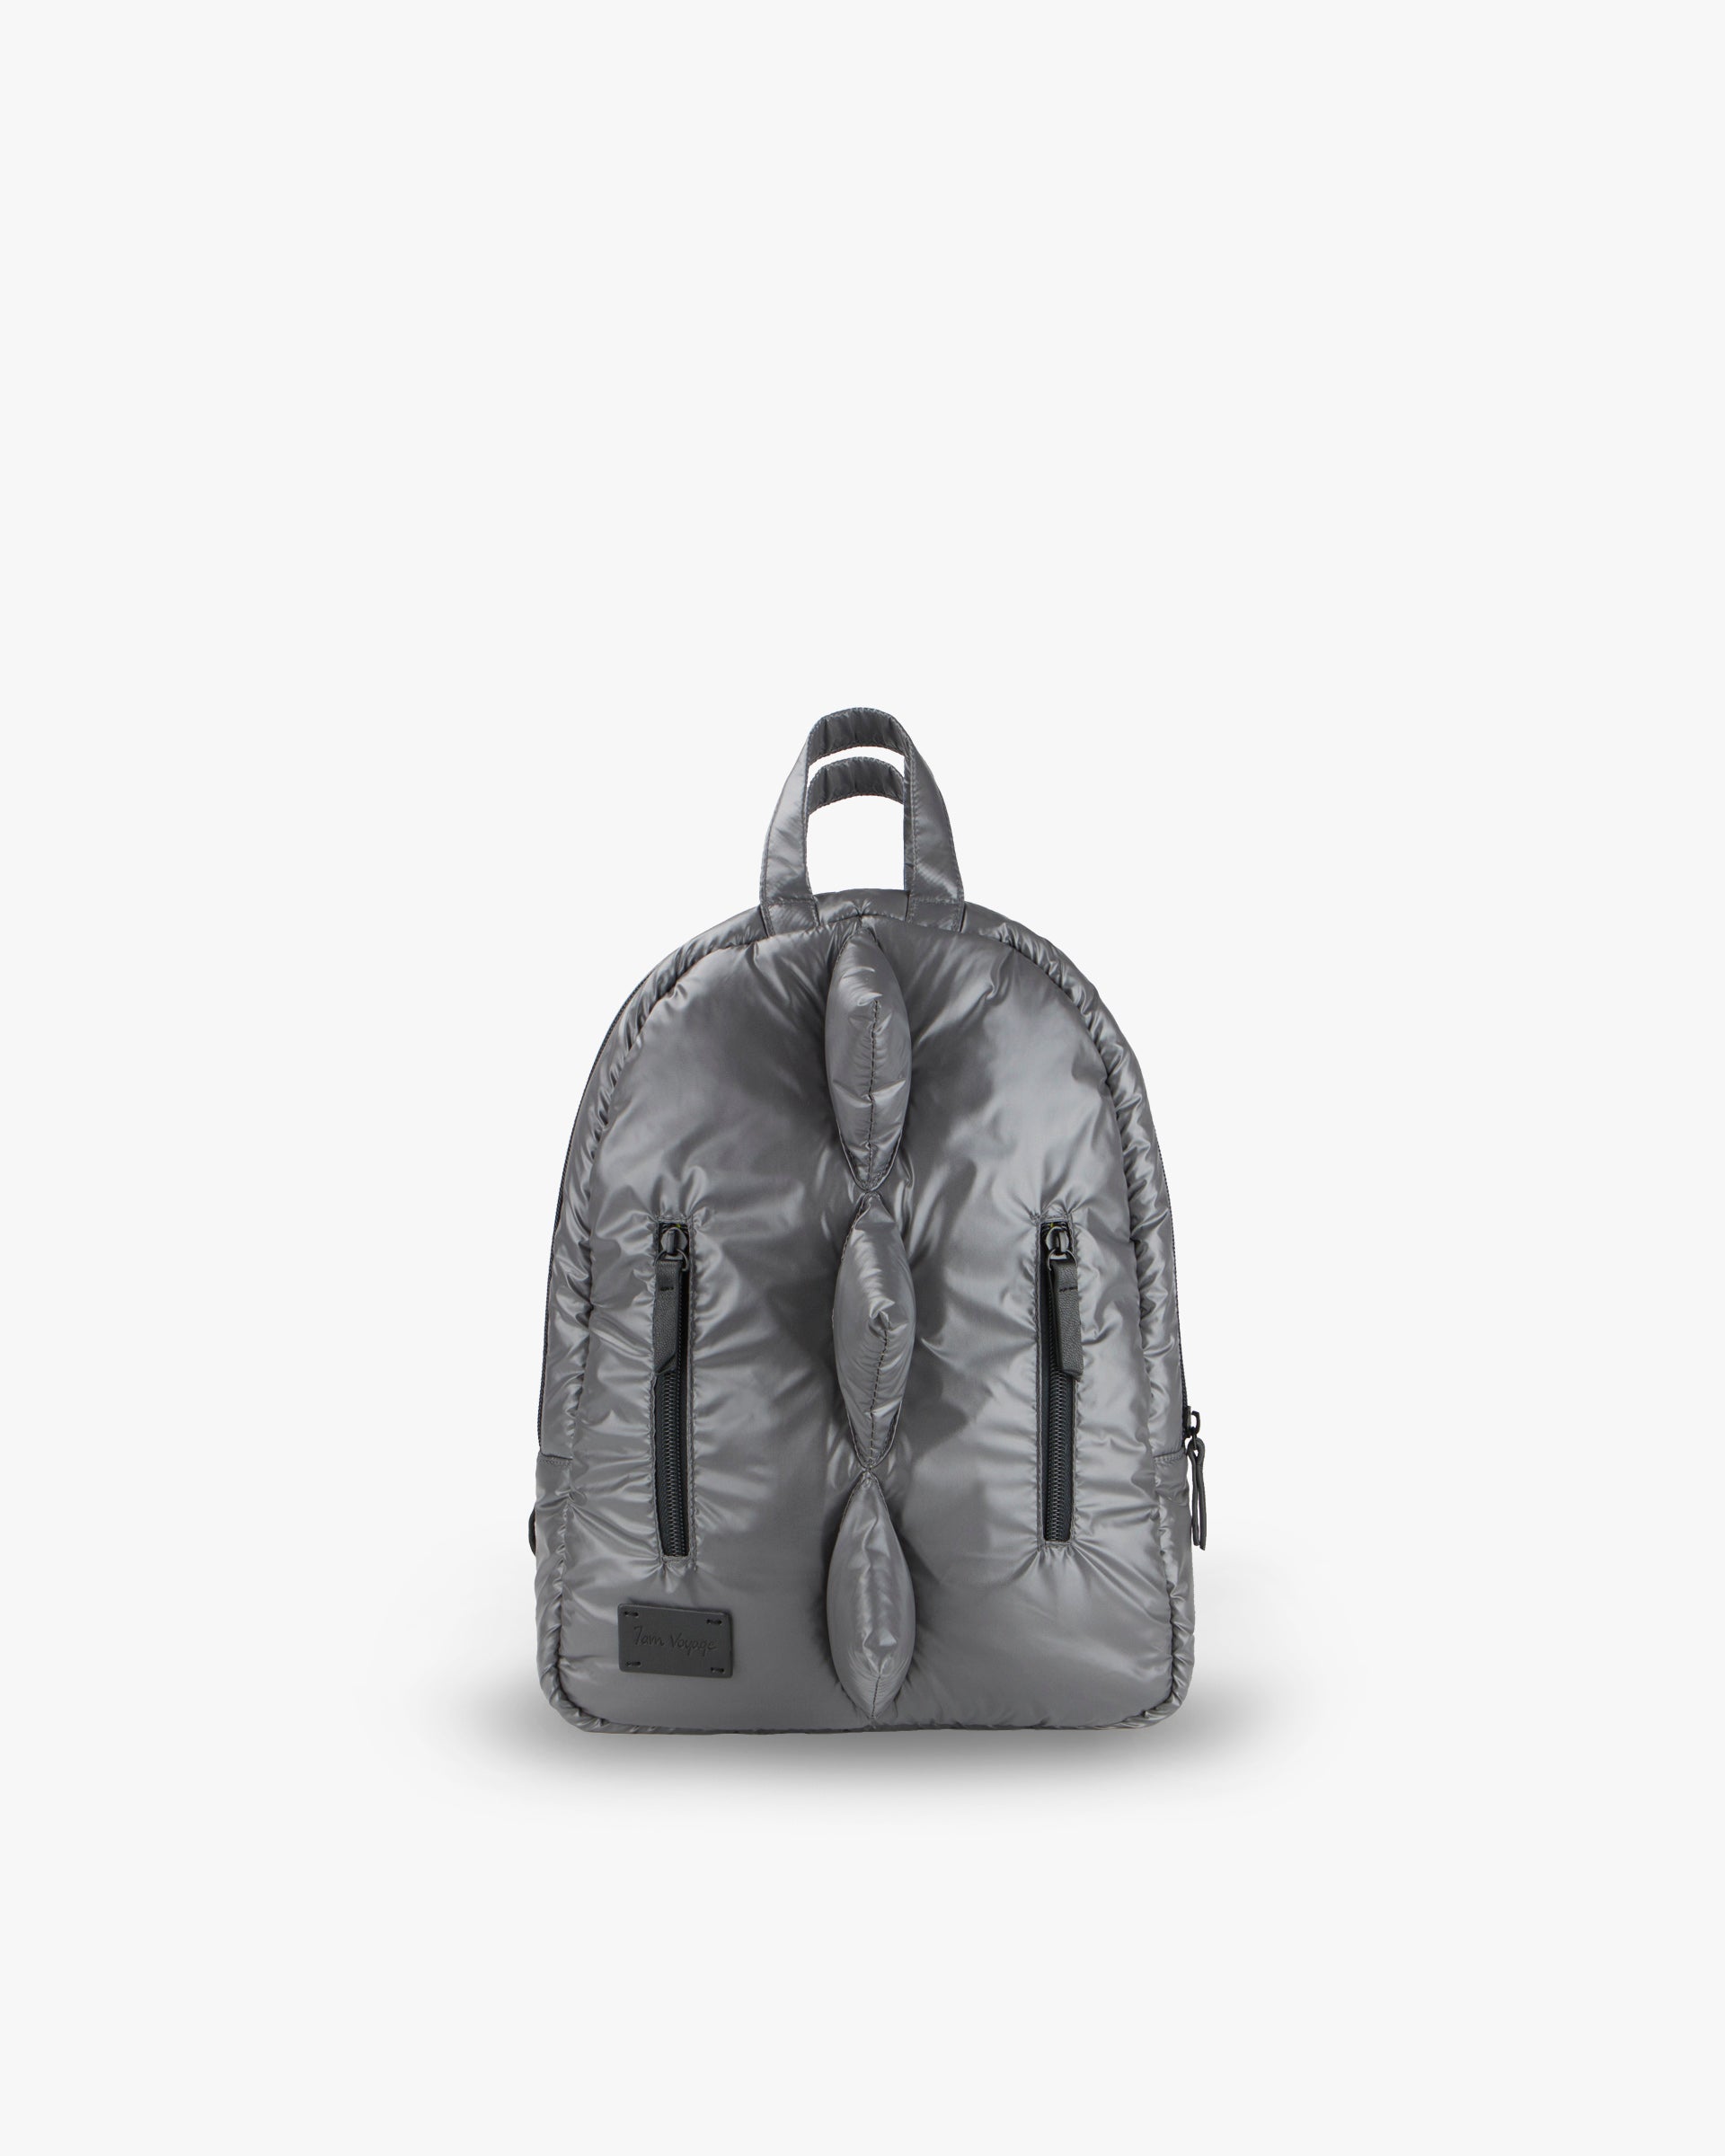 mini black backpack